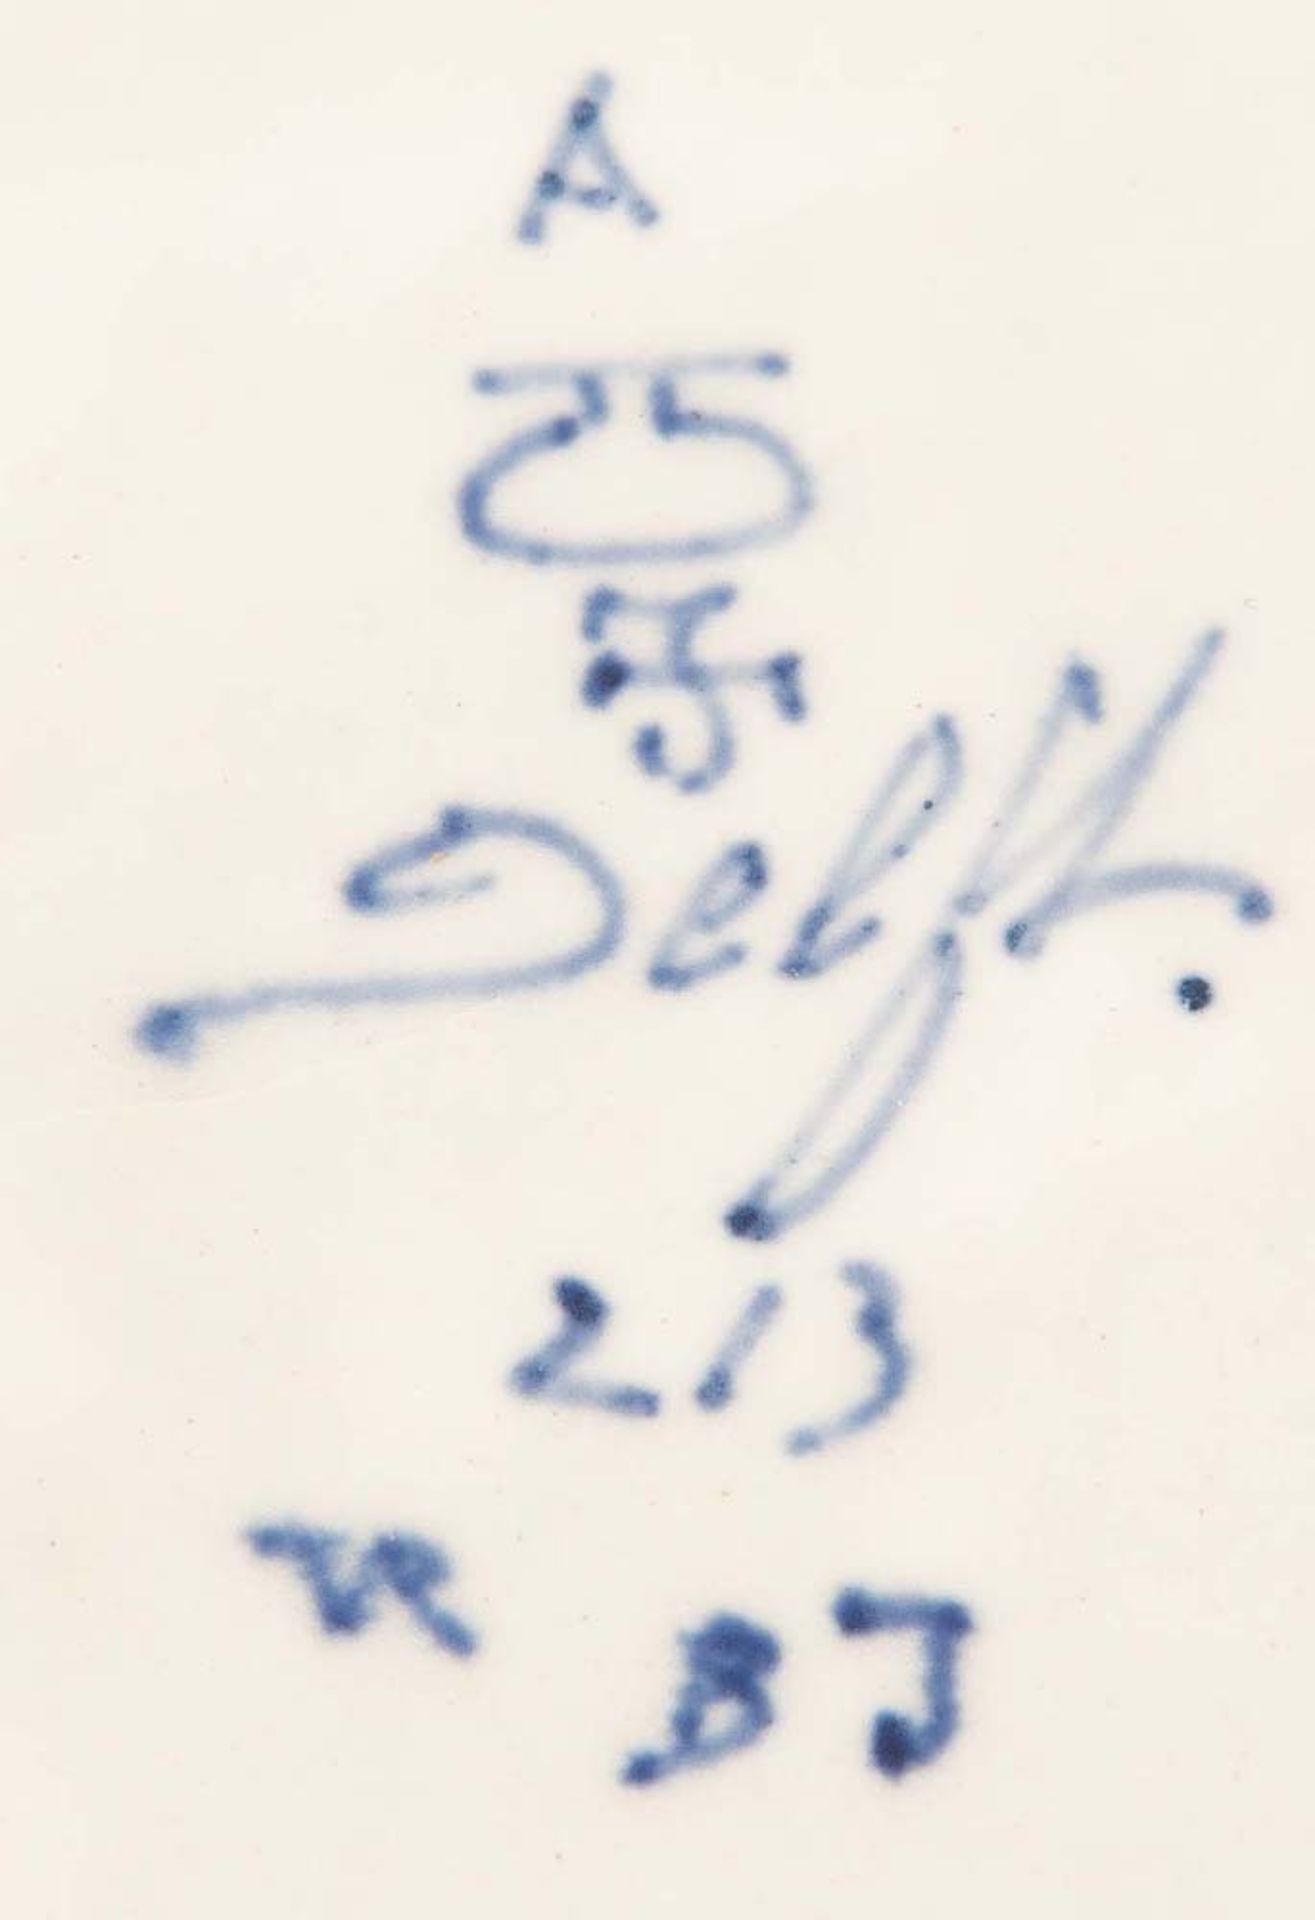 Siebentlgs. Konvolut. Delft u.a., 19./20. Jh. Fayence, unterglasurblau bemalt, am Boden teilw. - Bild 2 aus 2